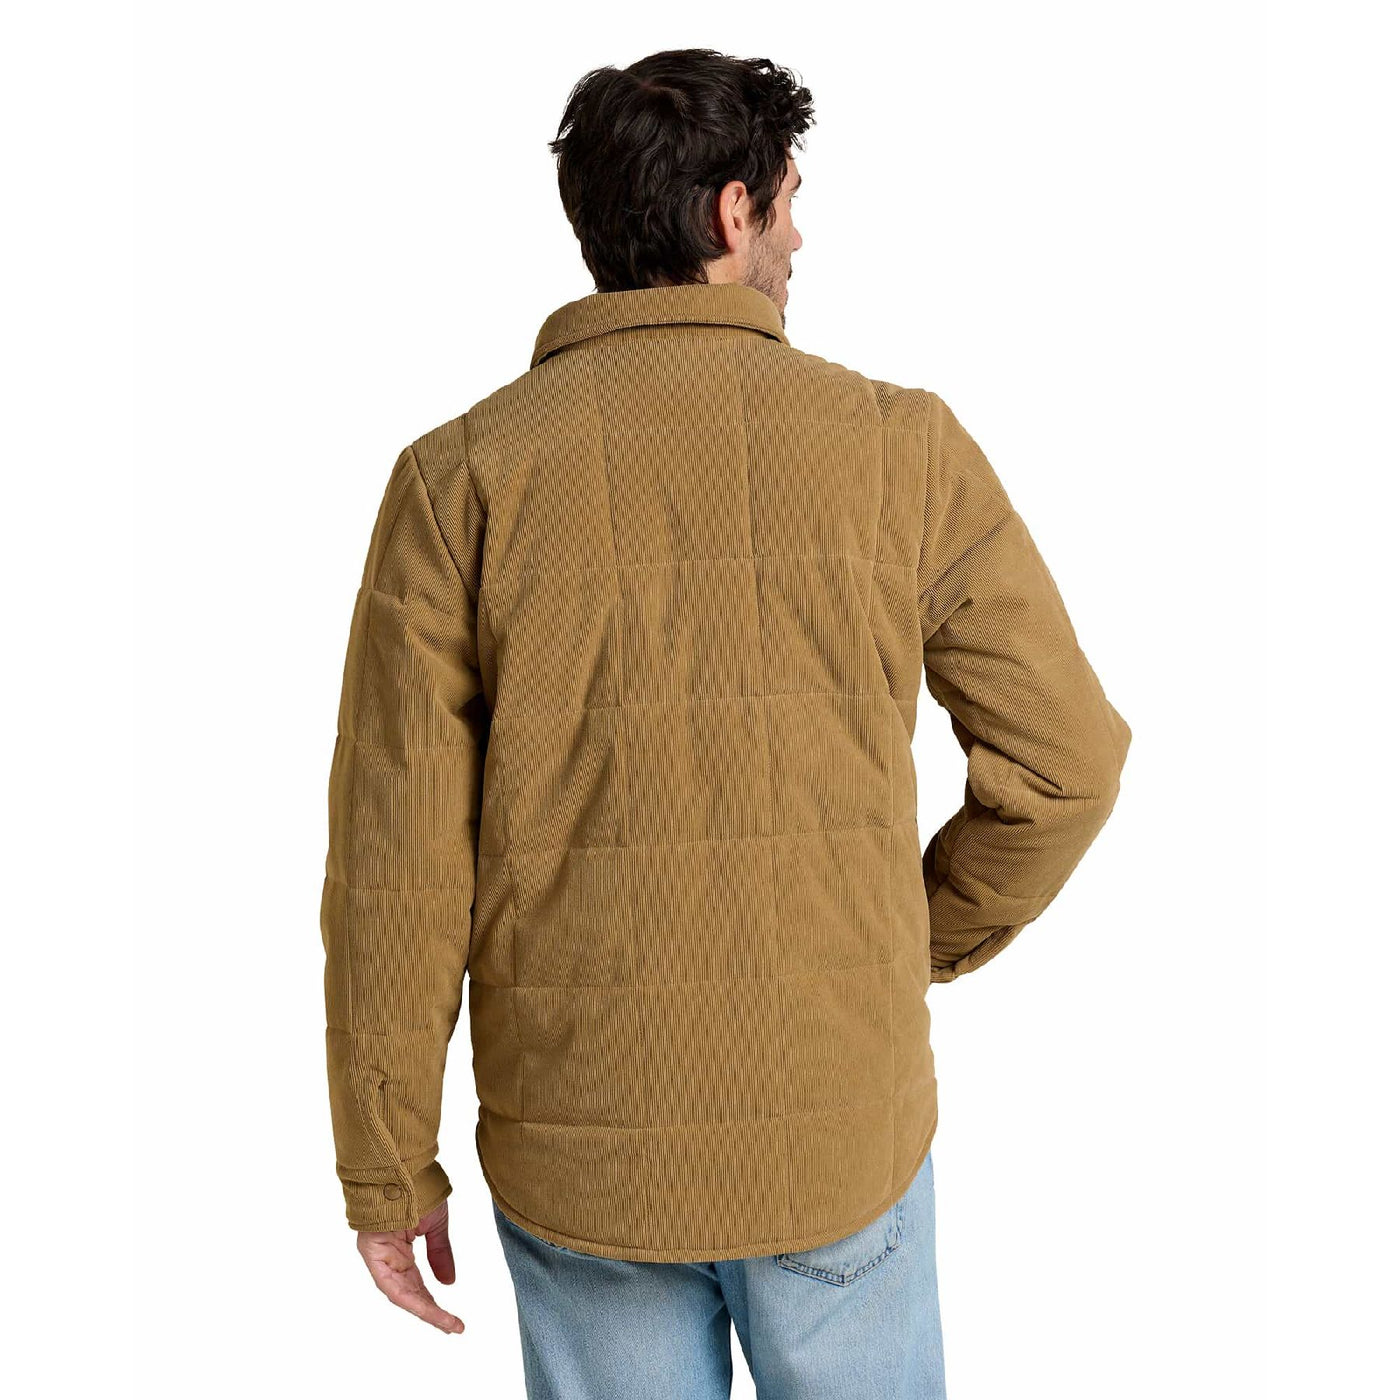 Spruce Wood Shirt Jacket